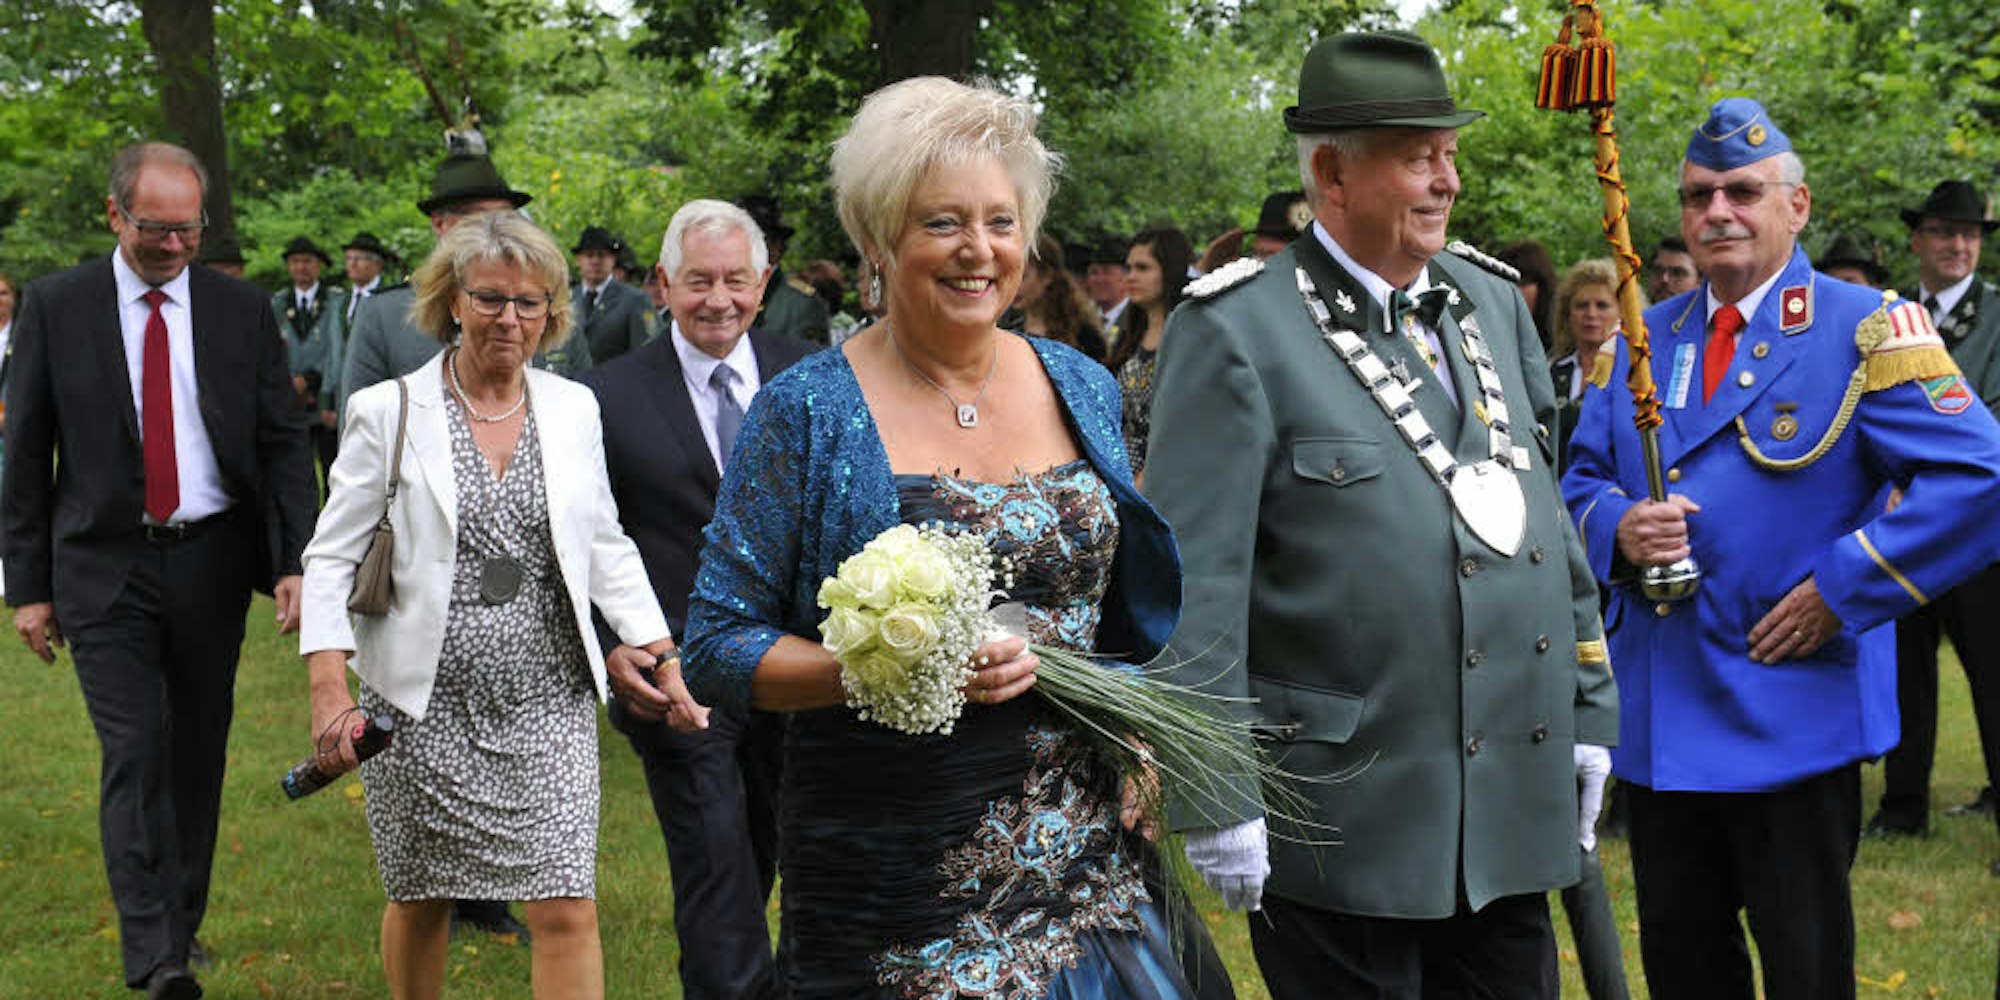 König Heinz Junggeburth mit Königin Inge und Bürgerkönigin Ulrike Scheeren-Bechhold mit ihrem Mann Dieter beim Festzug.